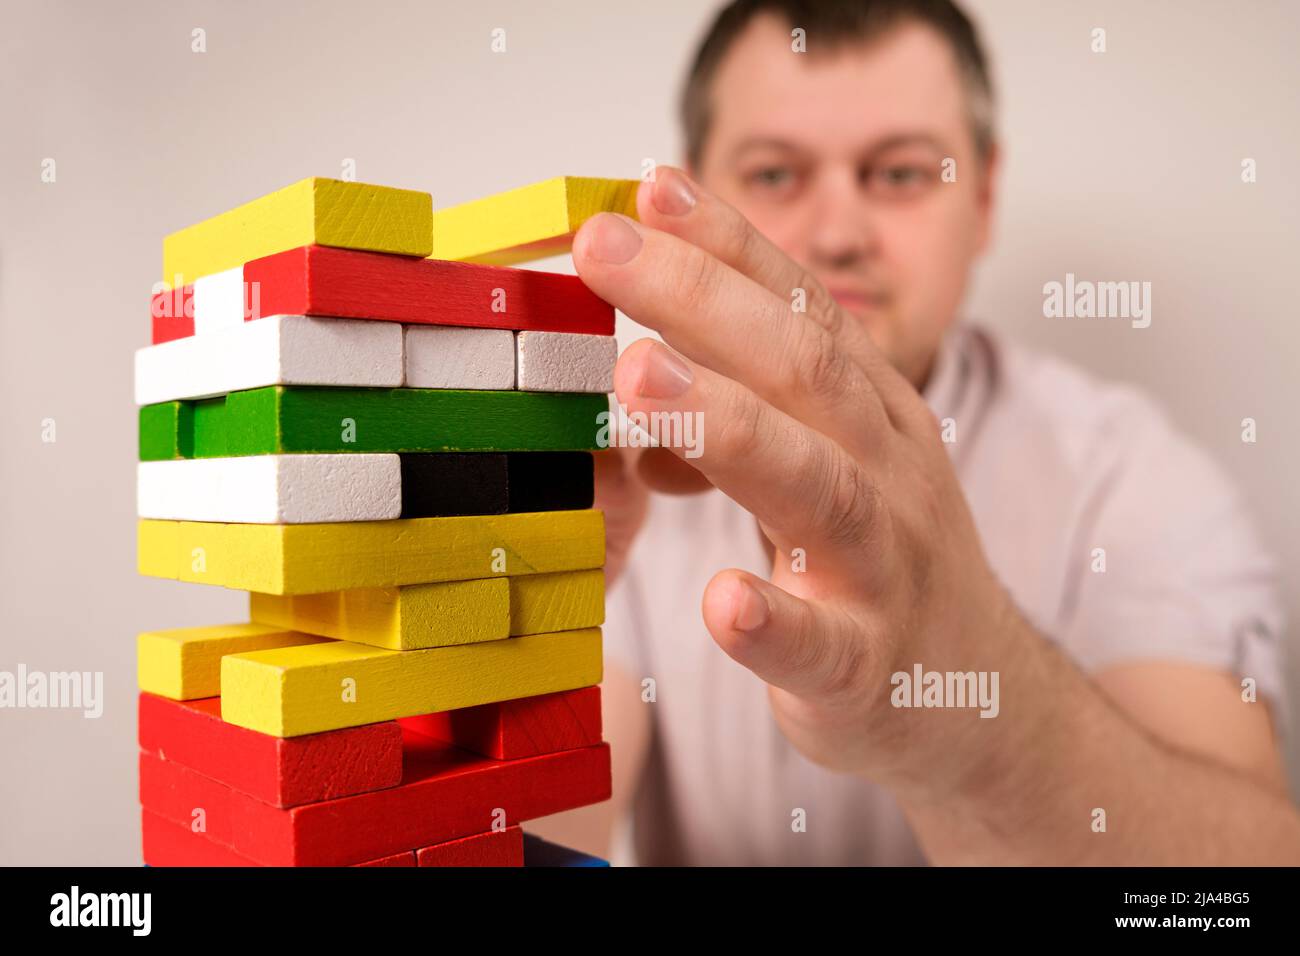 Ein Mann spielt ein Brettspiel von Jenga, zieht vorsichtig mehrfarbige Blöcke aus dem Turm. Stockfoto